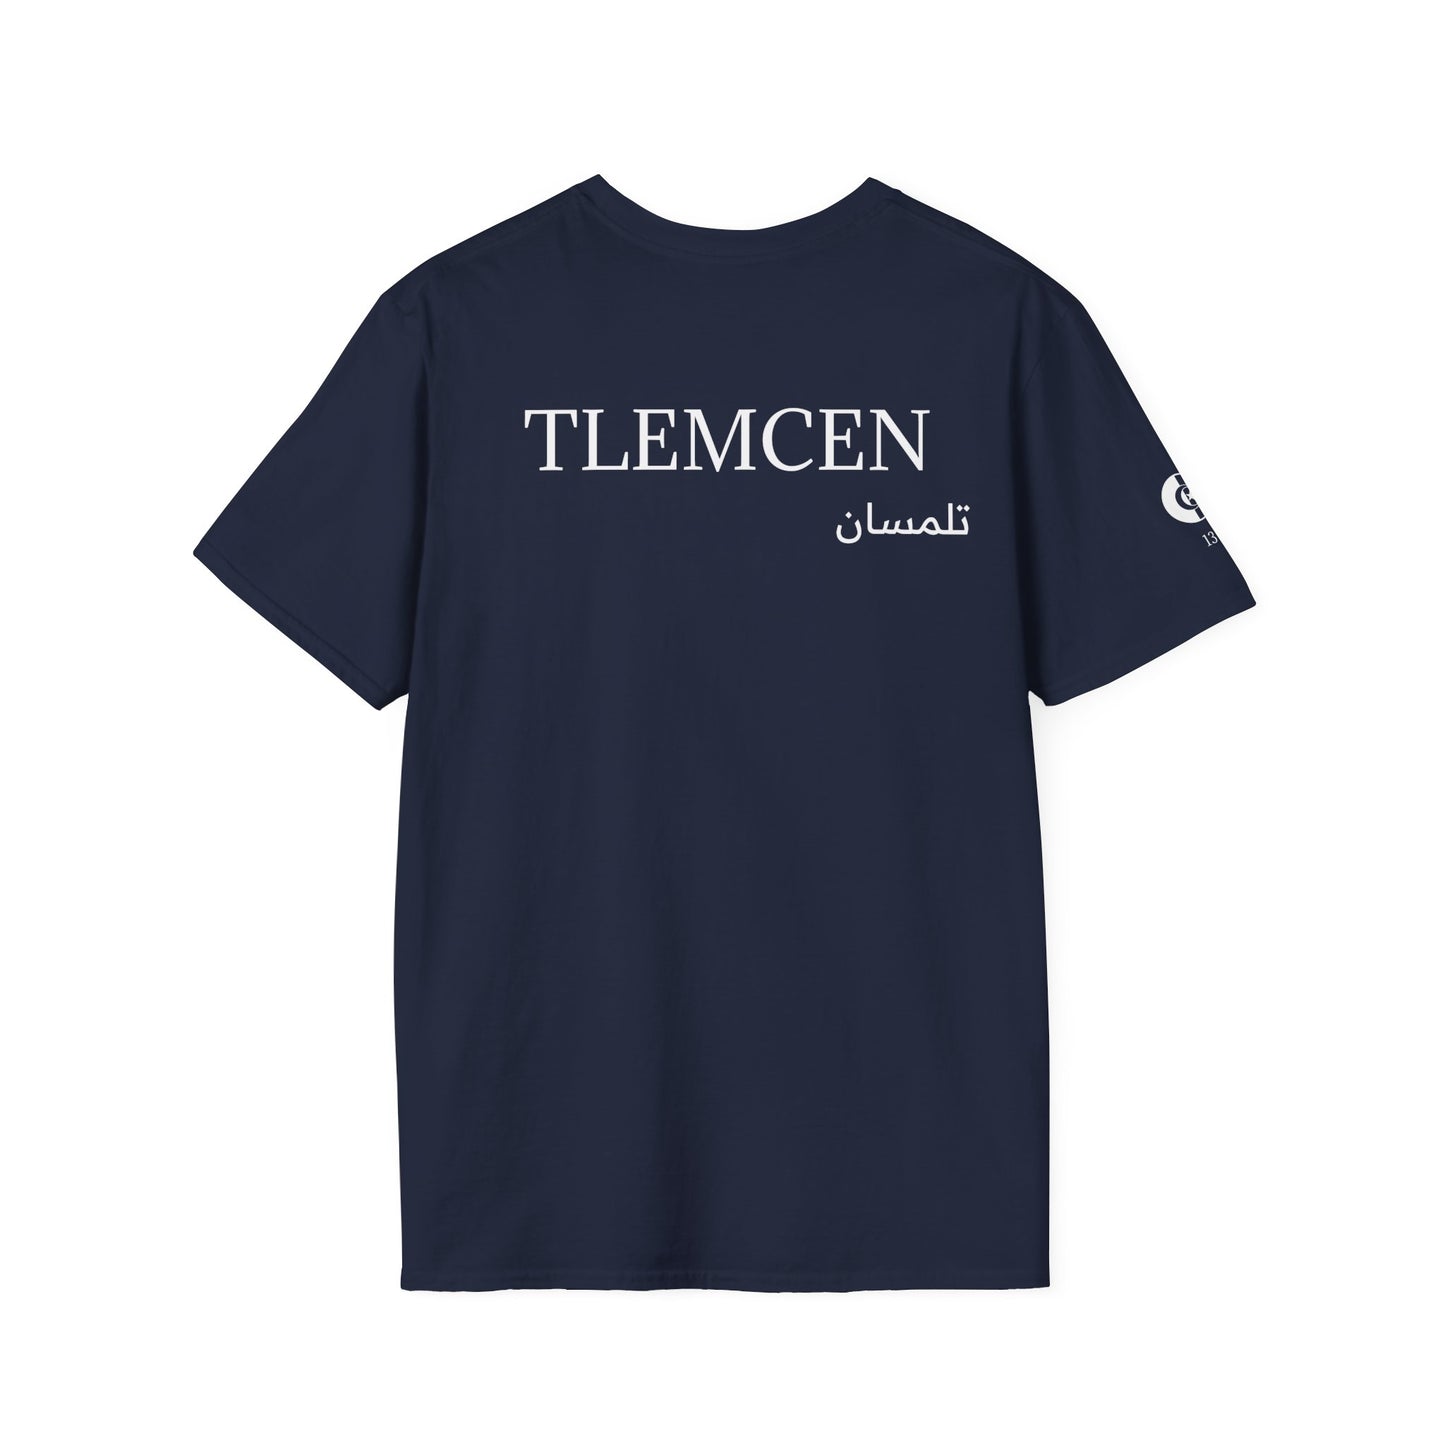 T-Shirt TLEMCEN 13